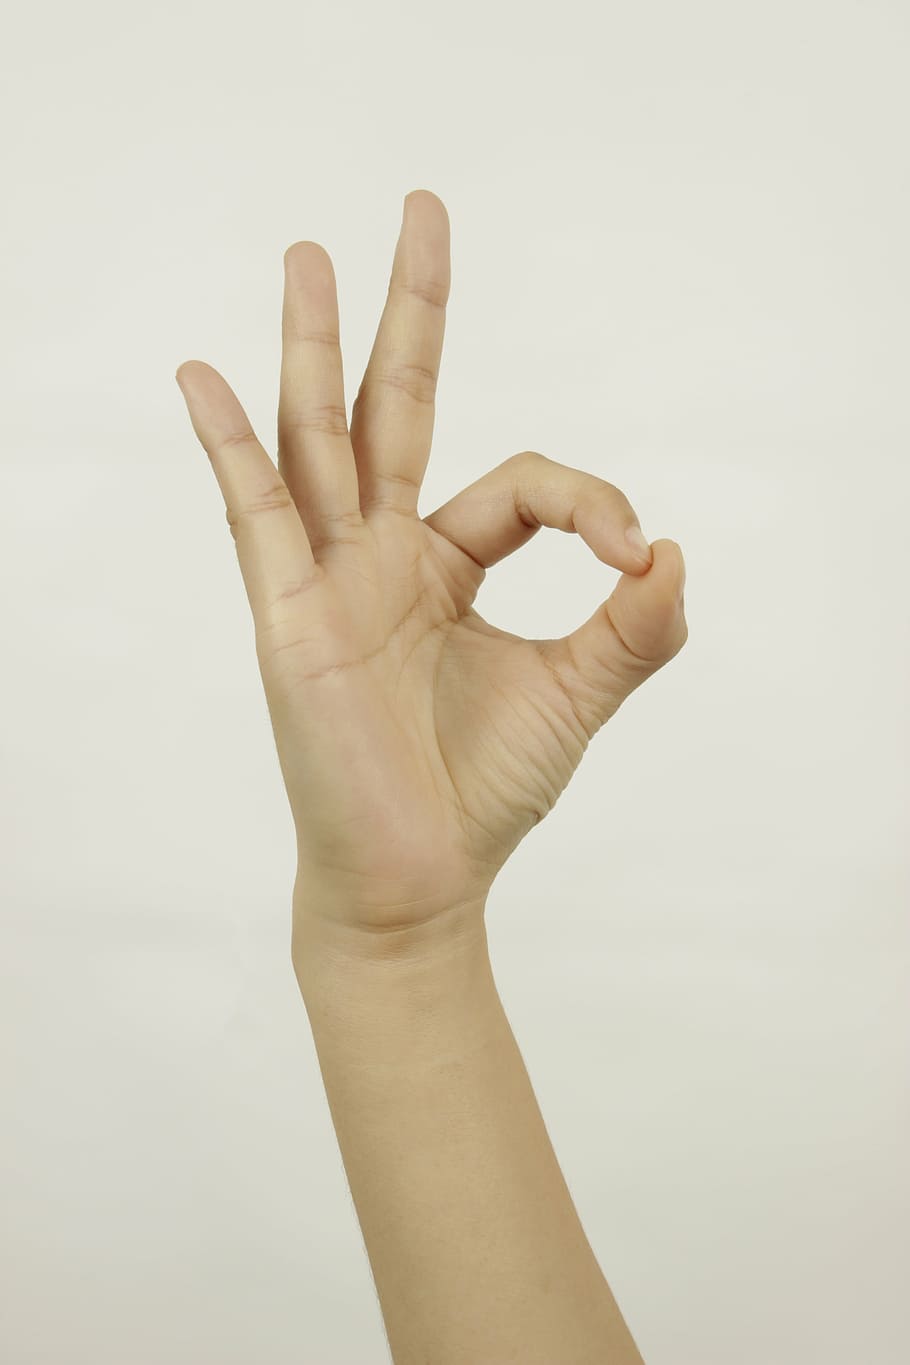 persona, mostrando, ok gesto de la mano, mano, dedo, el gesto, mano humana, gesticulando, dedo humano, personas